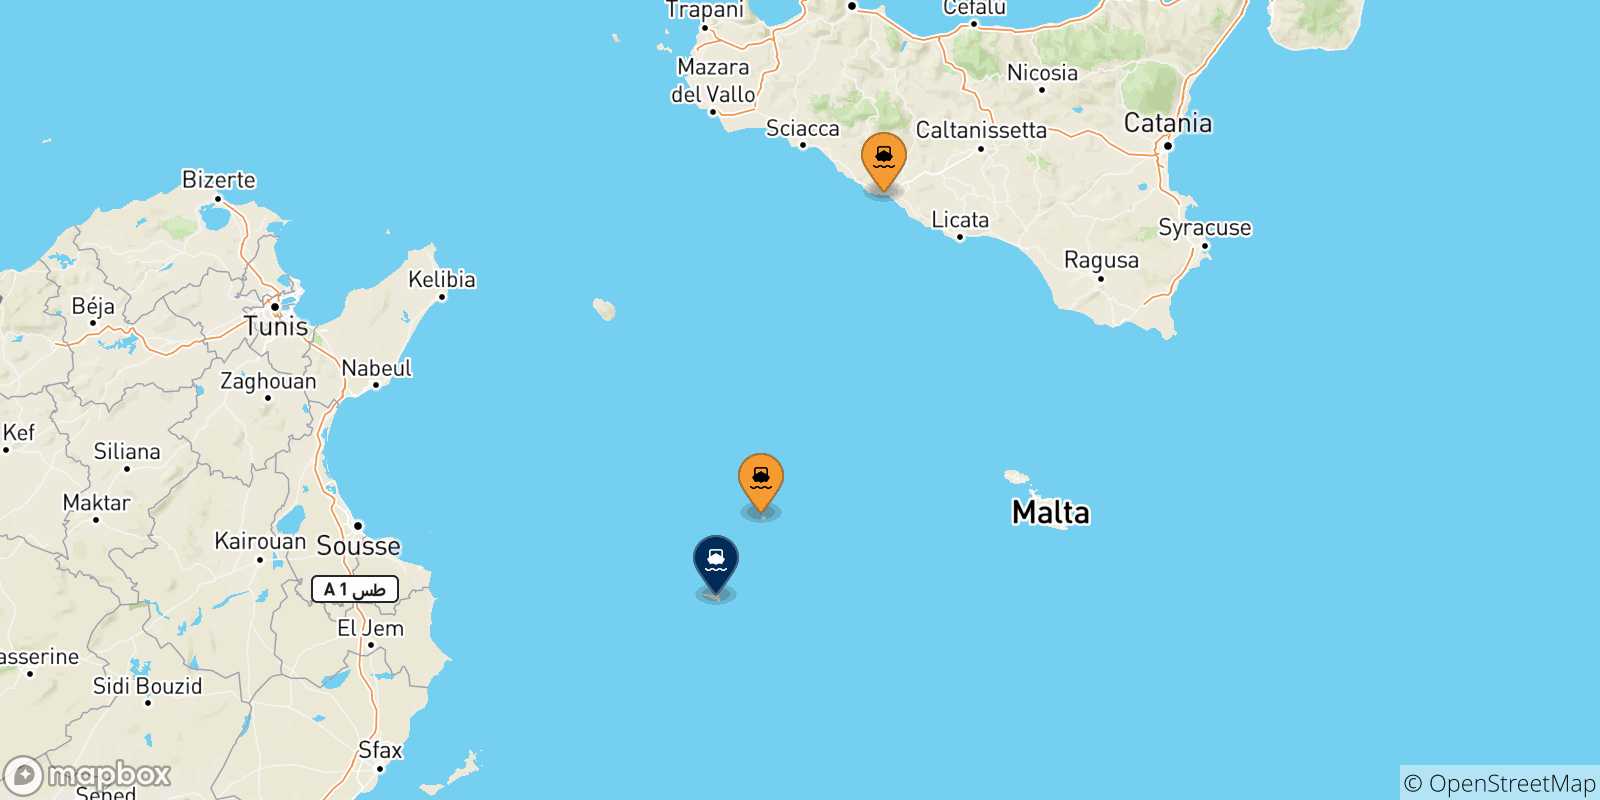 Mappa delle possibili rotte tra l'Italia e Lampedusa